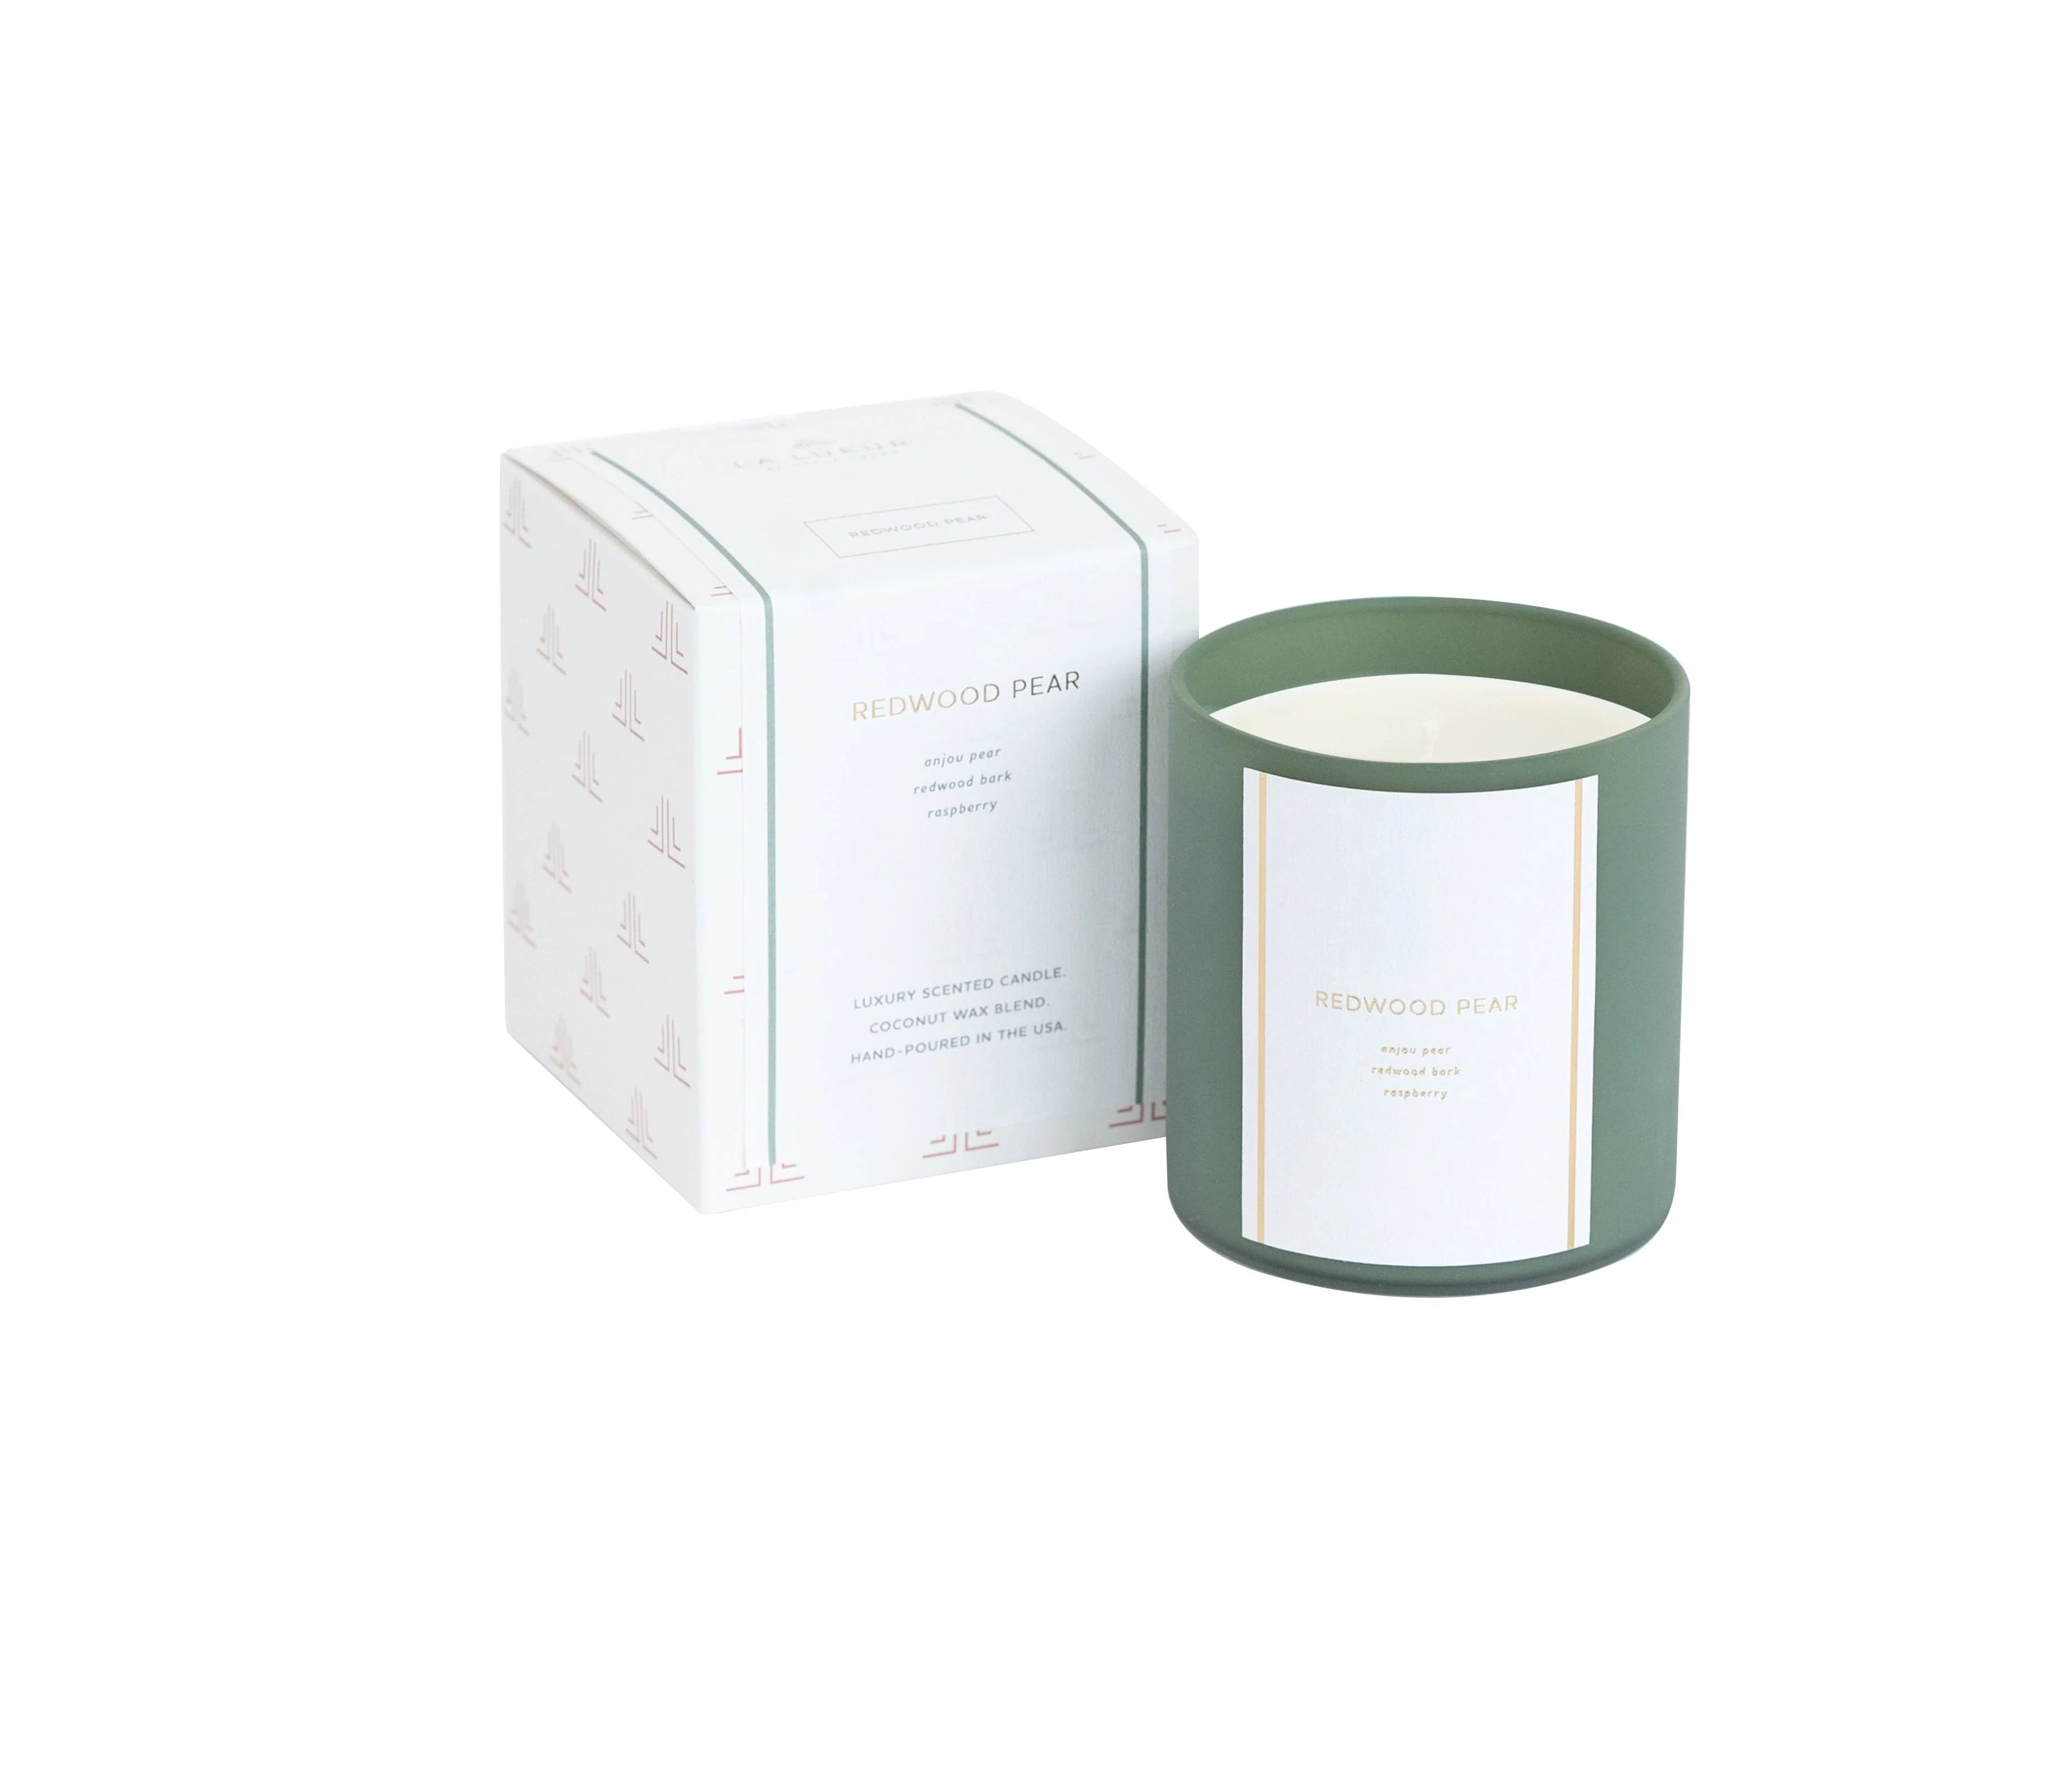 Redwood Pear | 10 oz | Limited Edition | La Lueur Candles